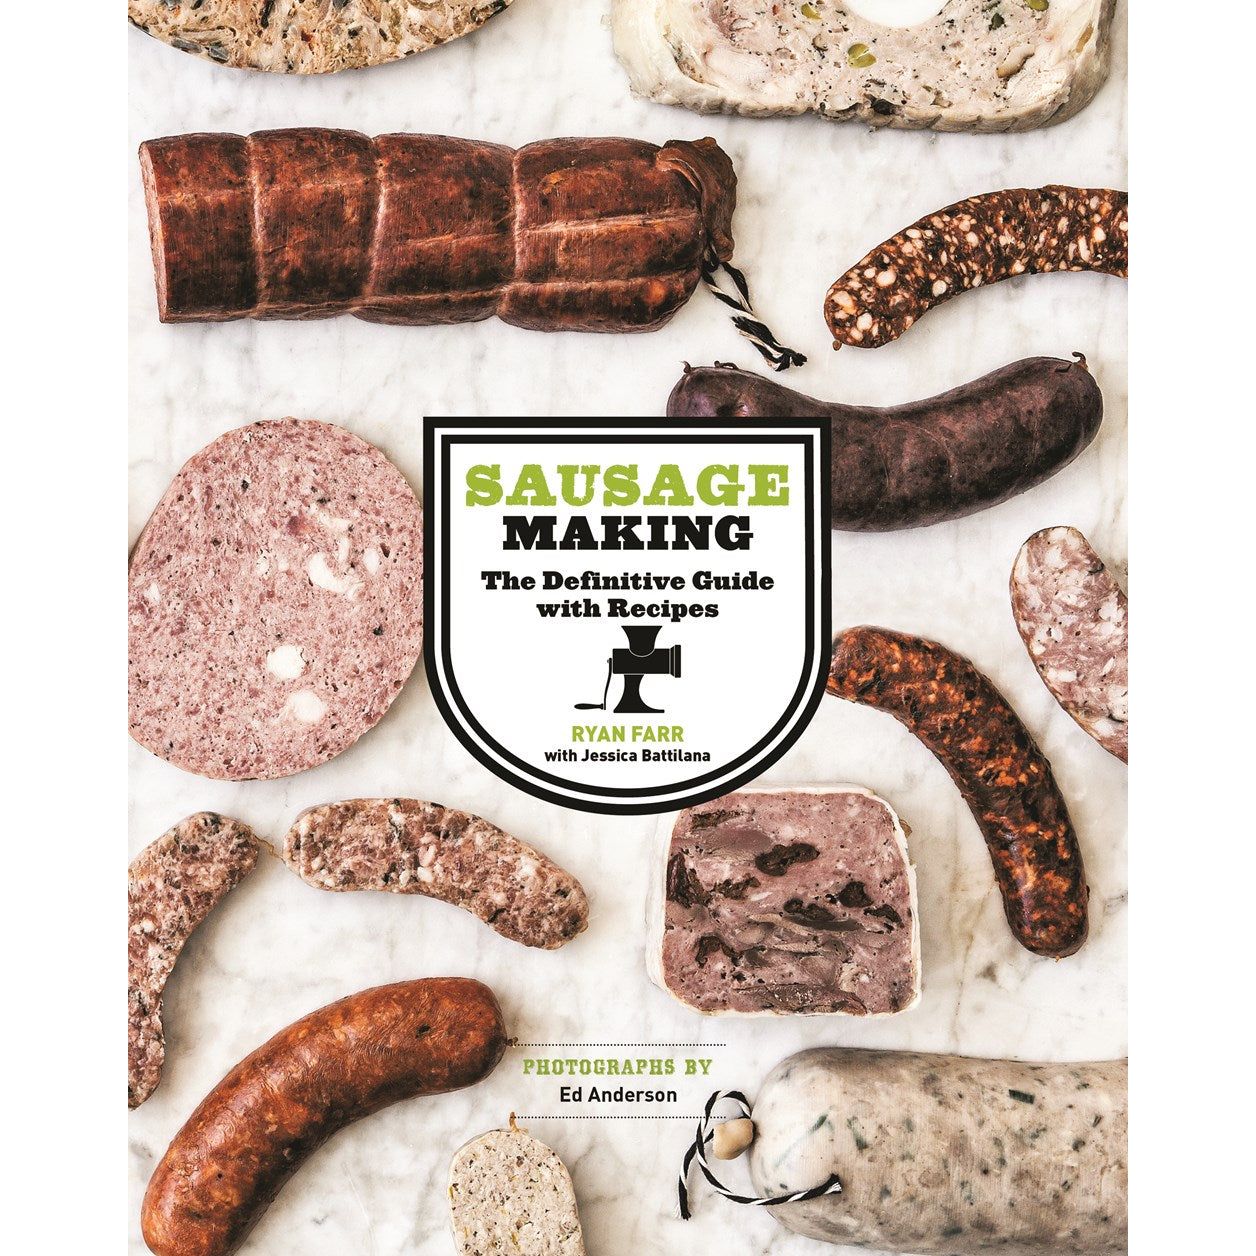 Sausage Making (Ryan Farr)